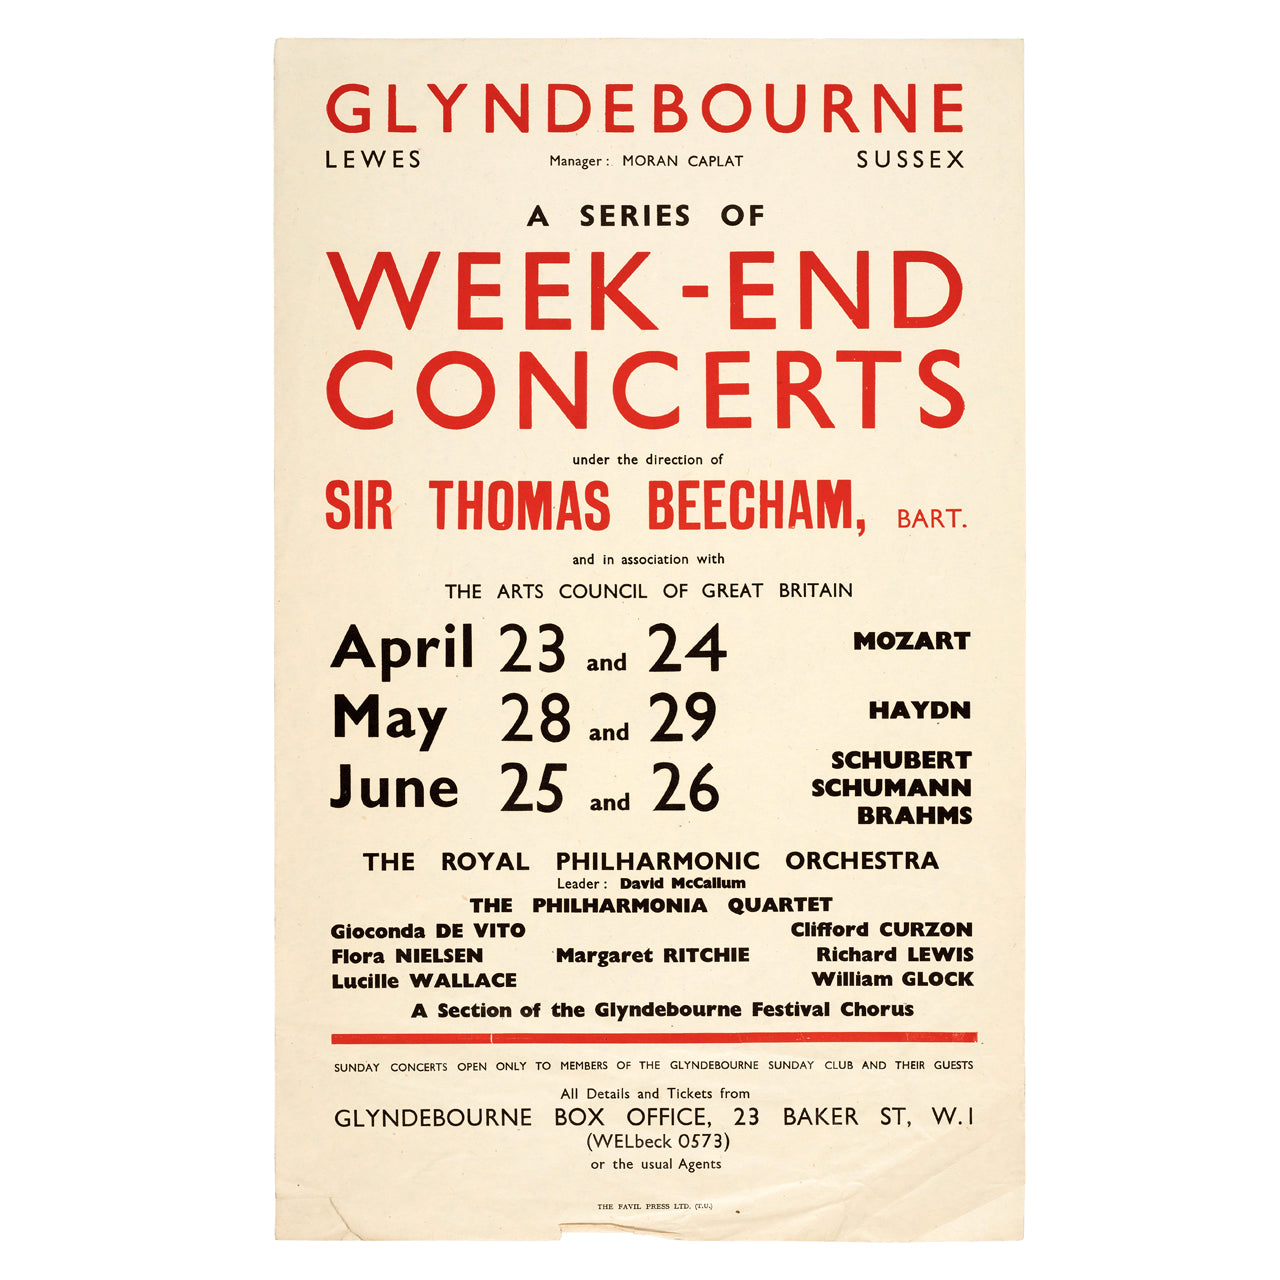 Glyndebourne Weekend Concerts 1949 Poster Glyndebourne Shop